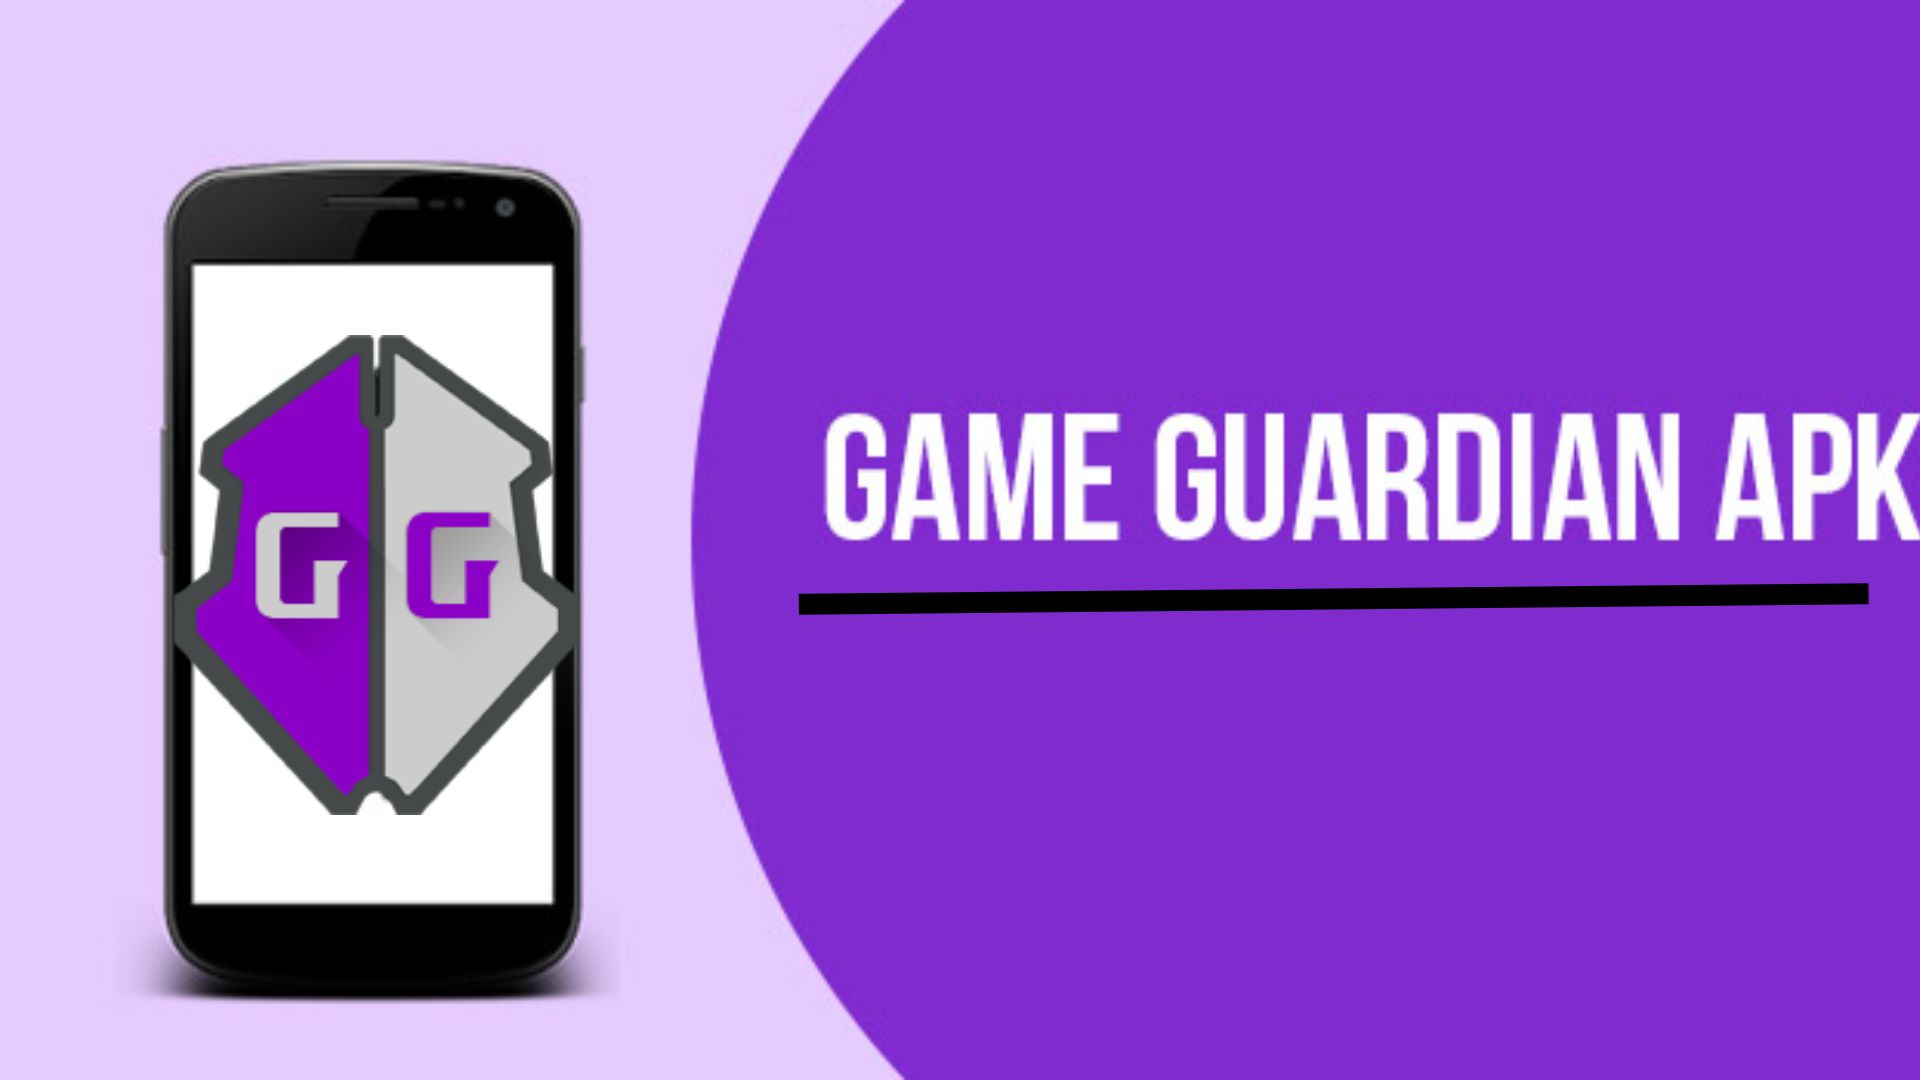 game guardian apk download